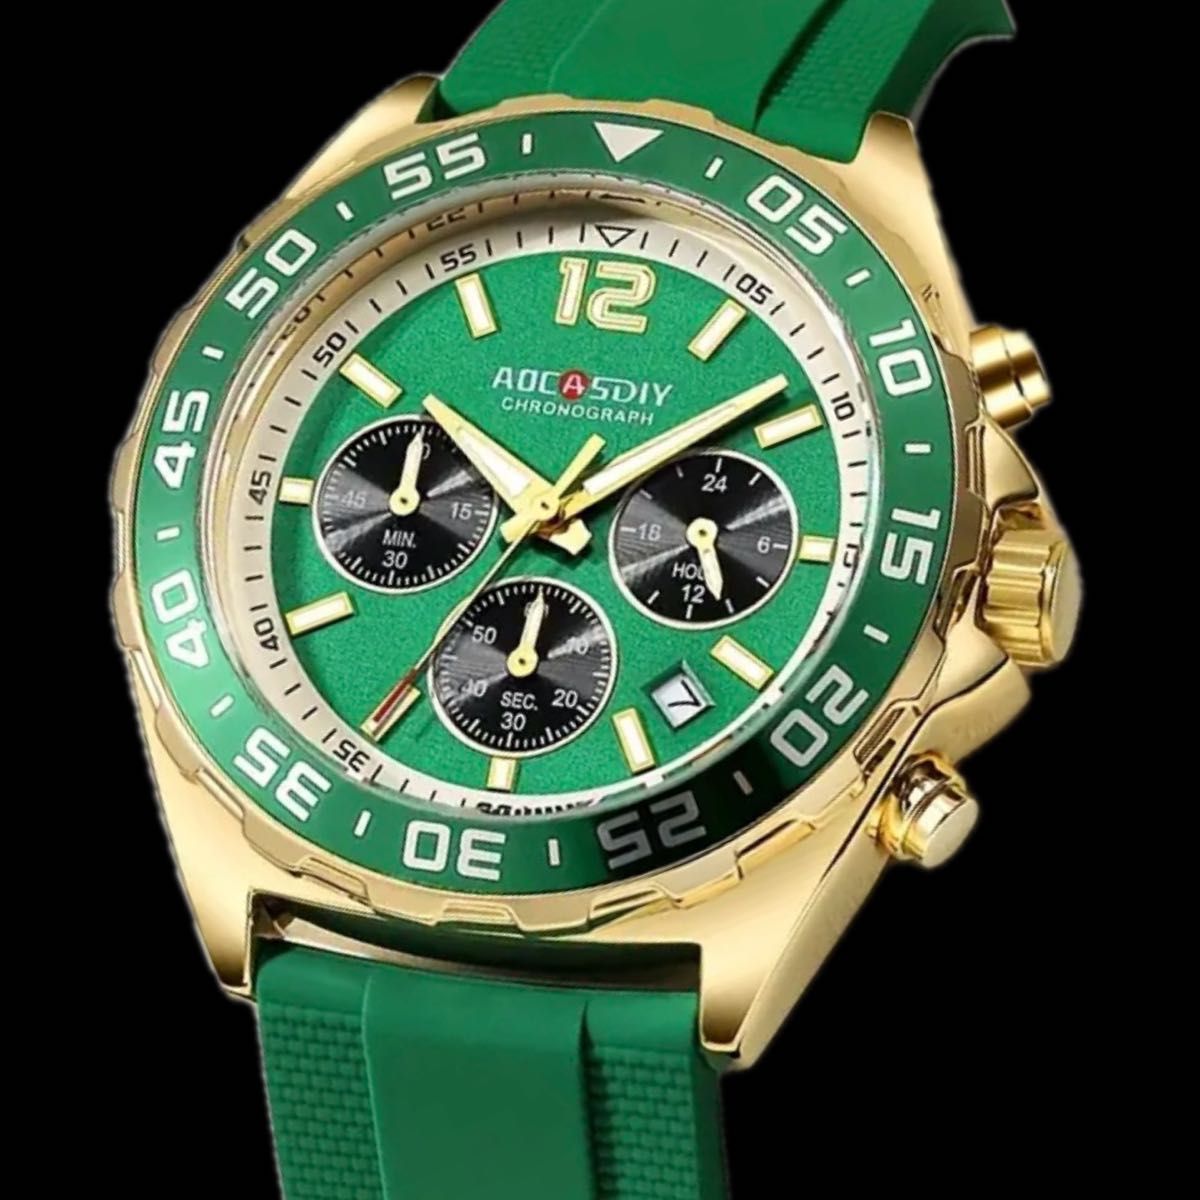 新品 AOCASDIY オマージュクロノグラフ ウォッチ ラバーストラップ メンズ腕時計  グリーン&ゴールド